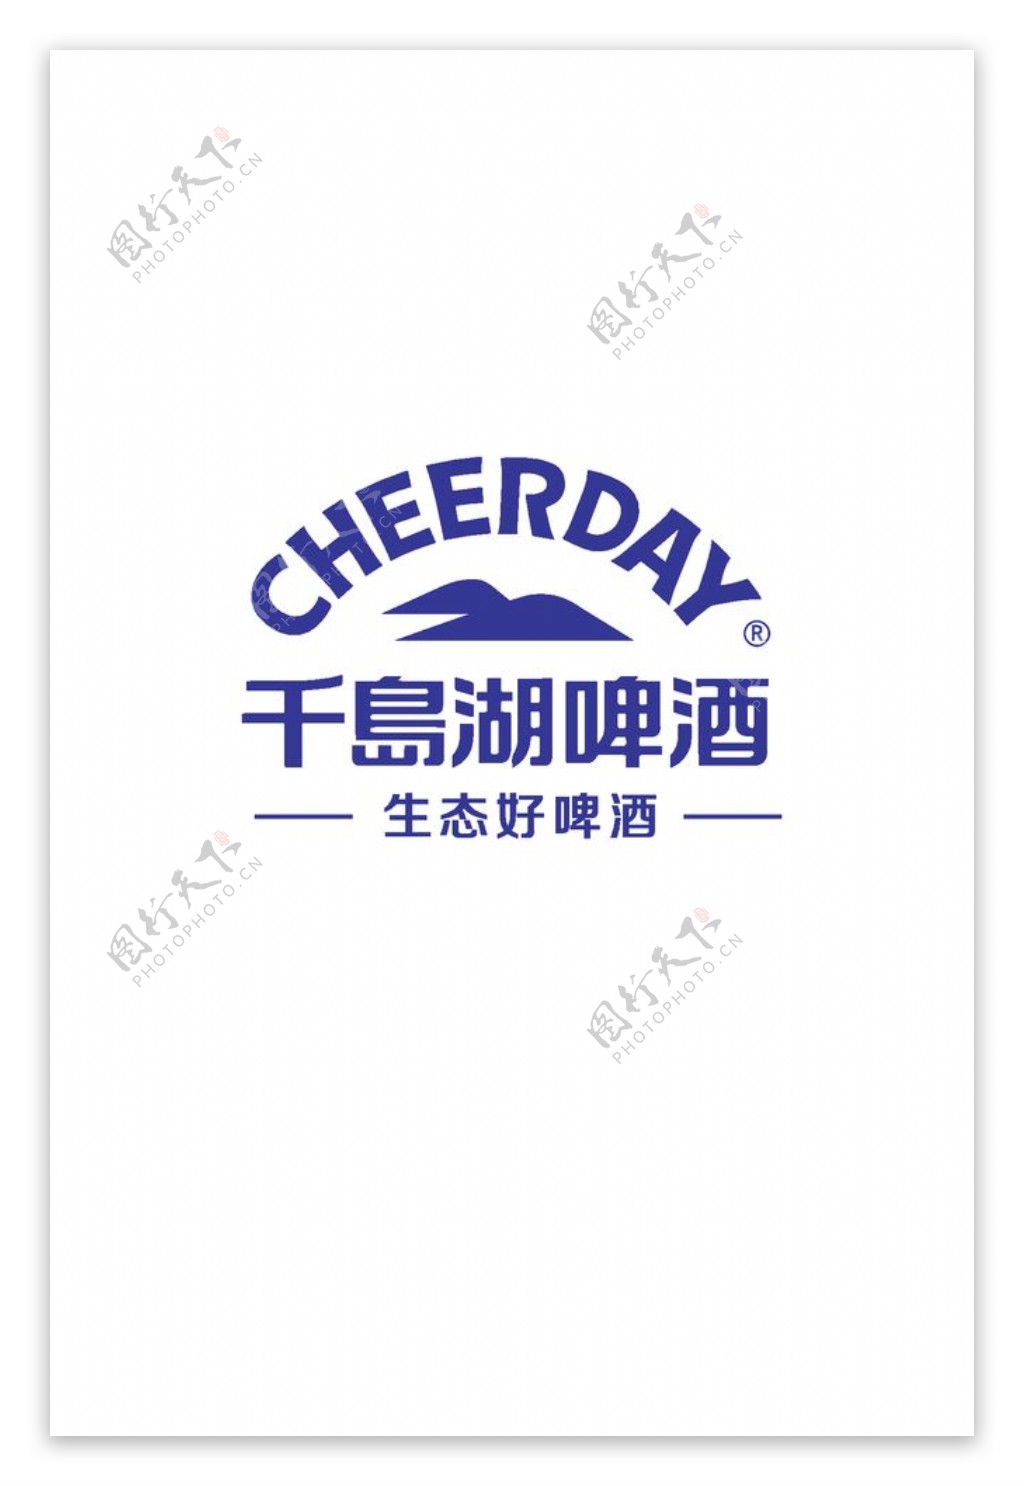 千岛湖啤酒logo标志图片